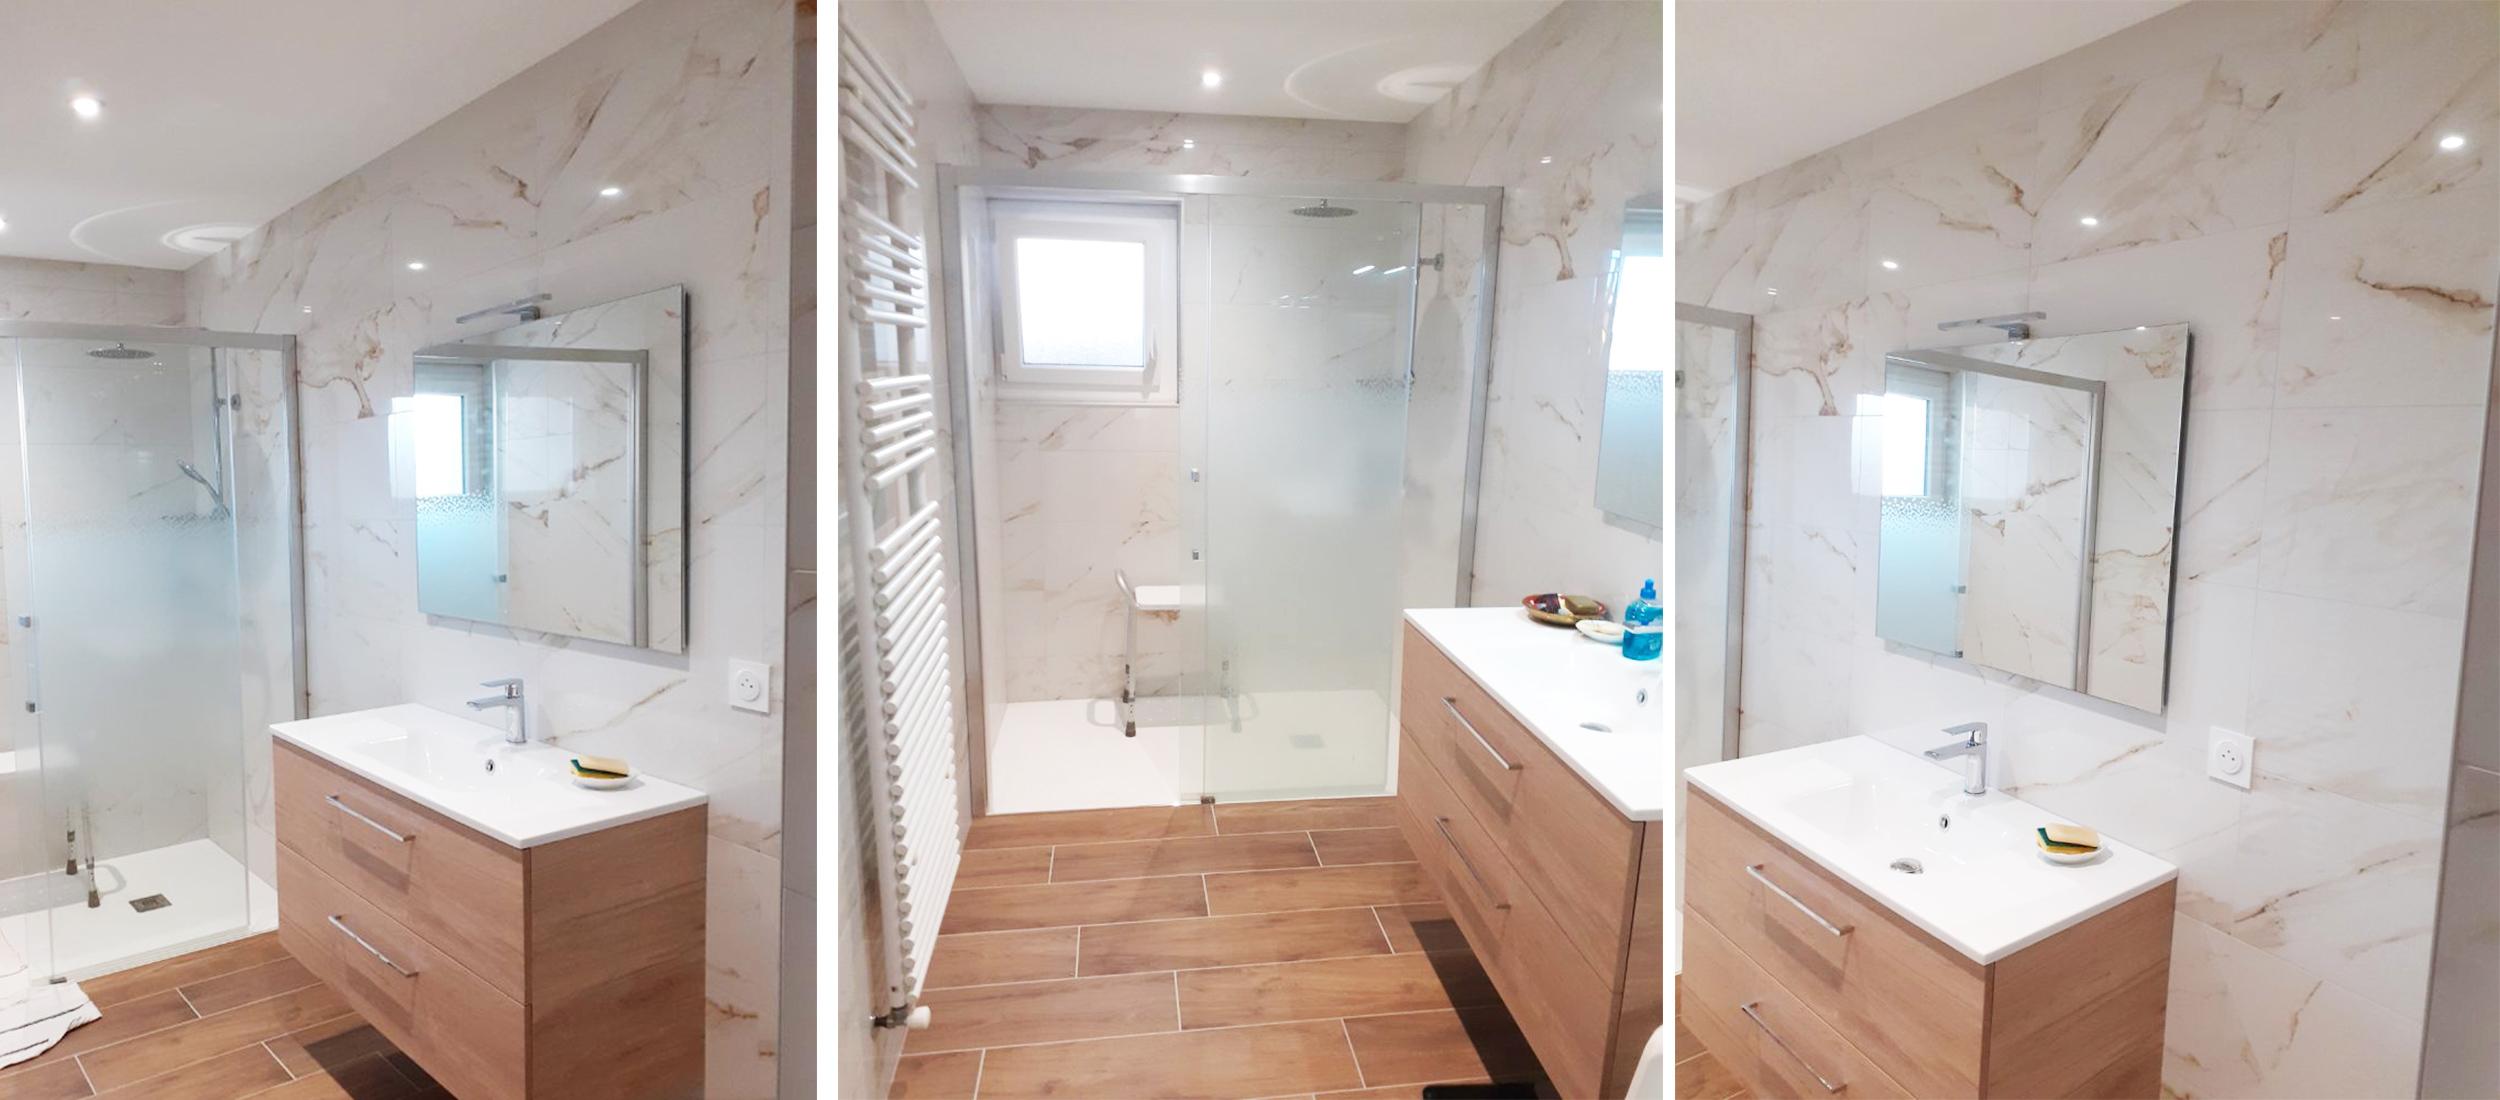 Rénovation complète d'une salle de bain pour personnes âgées par Carrélia à Valence